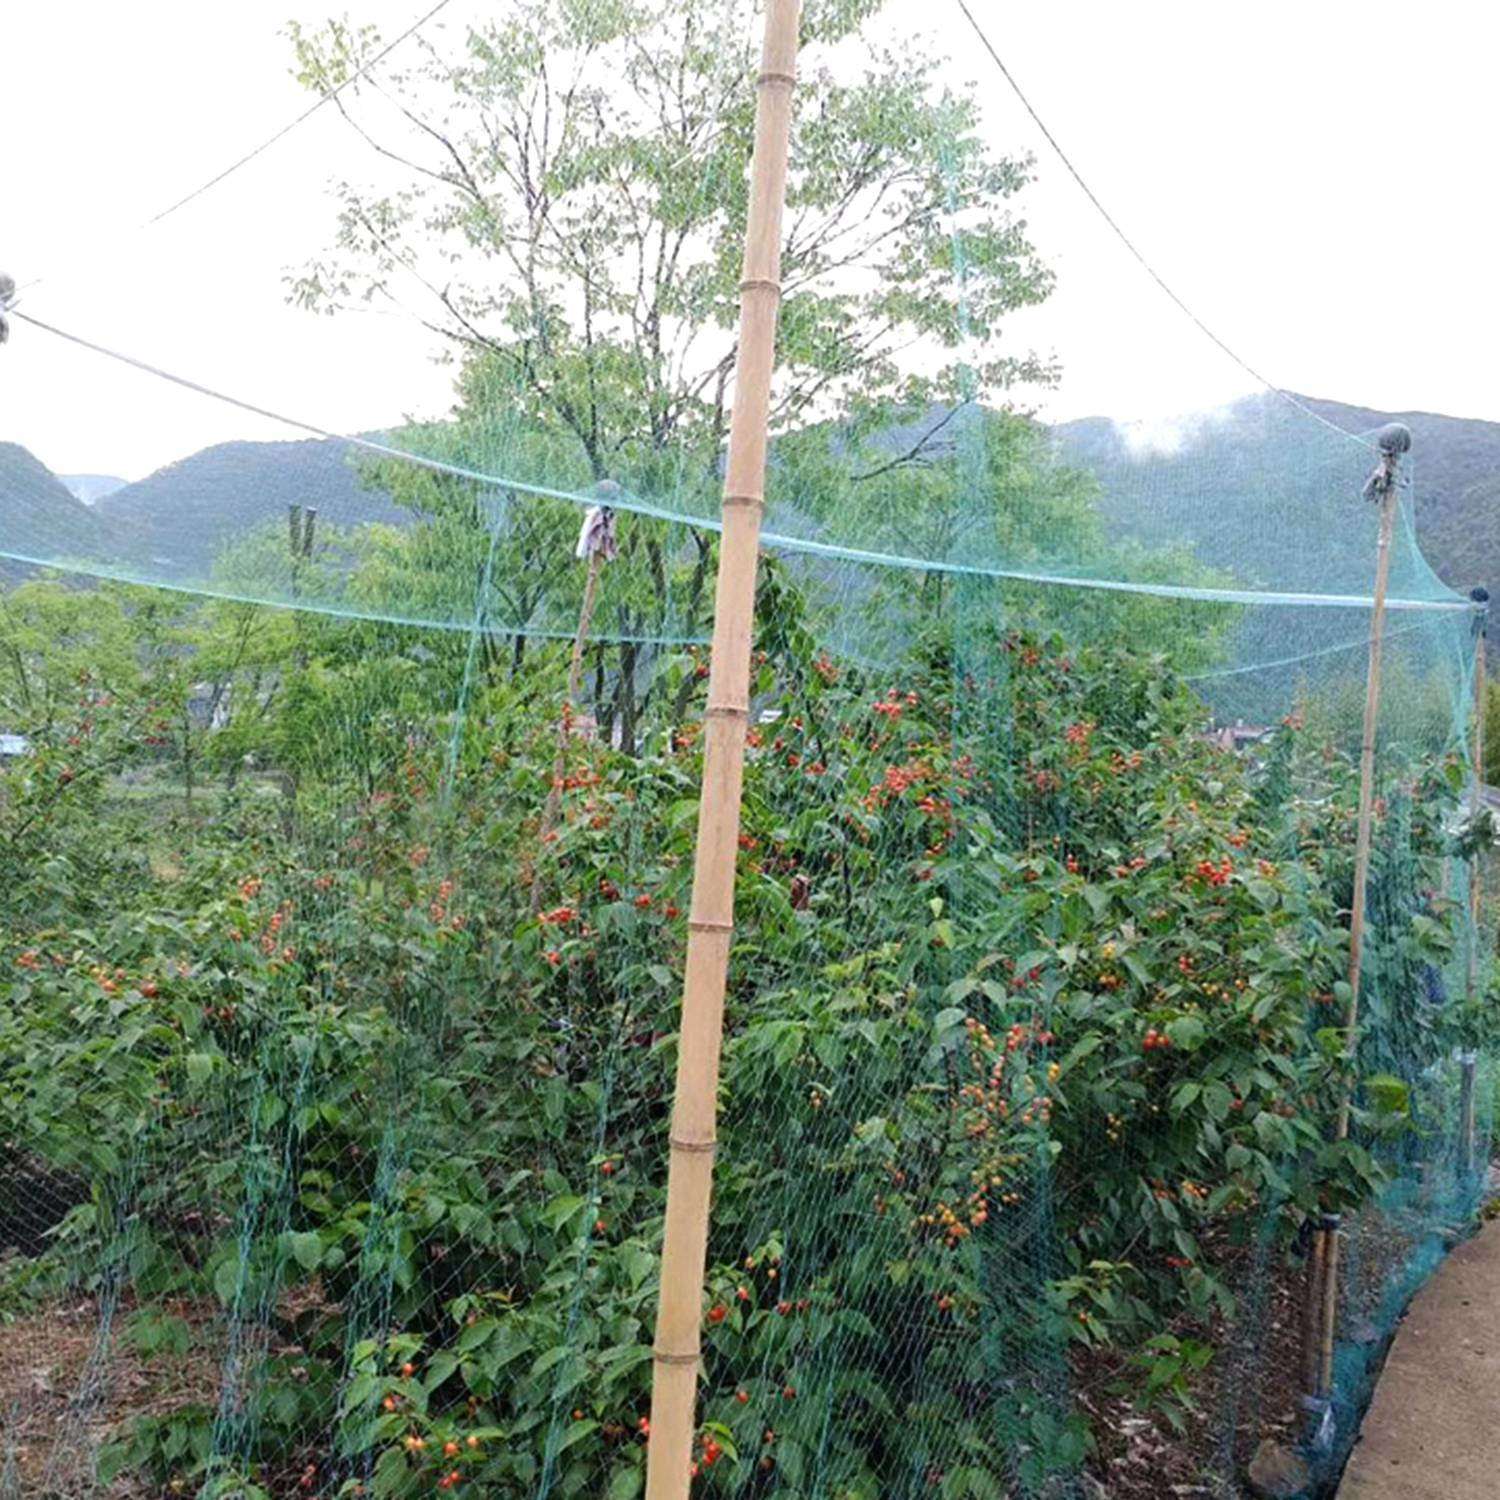 Gardening Net, Garden Mesh 33x7 Feet-2pcs